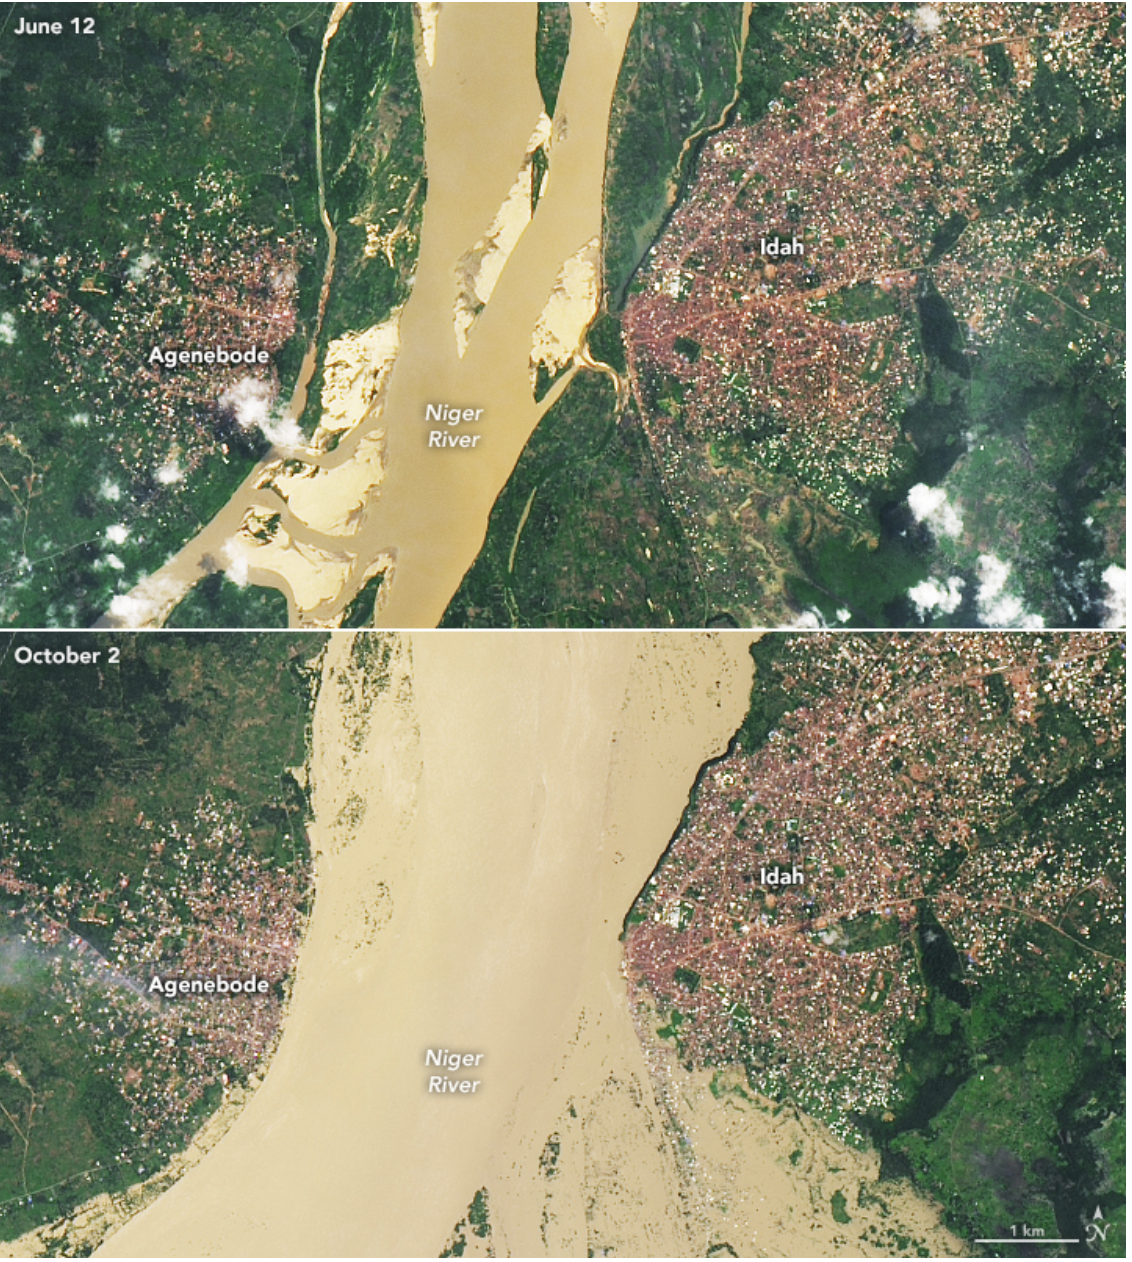 在尼日利亚，2022年的雨季尤其严重。在图片上方，洪水淹没了贝努埃河和尼日尔河沿岸的许多社区。在它们的交汇处，洪水淹没了科吉州首府洛科亚。洪水继续向南部蔓延，包括横跨科吉南部和阿南布拉州北部的大片地区。